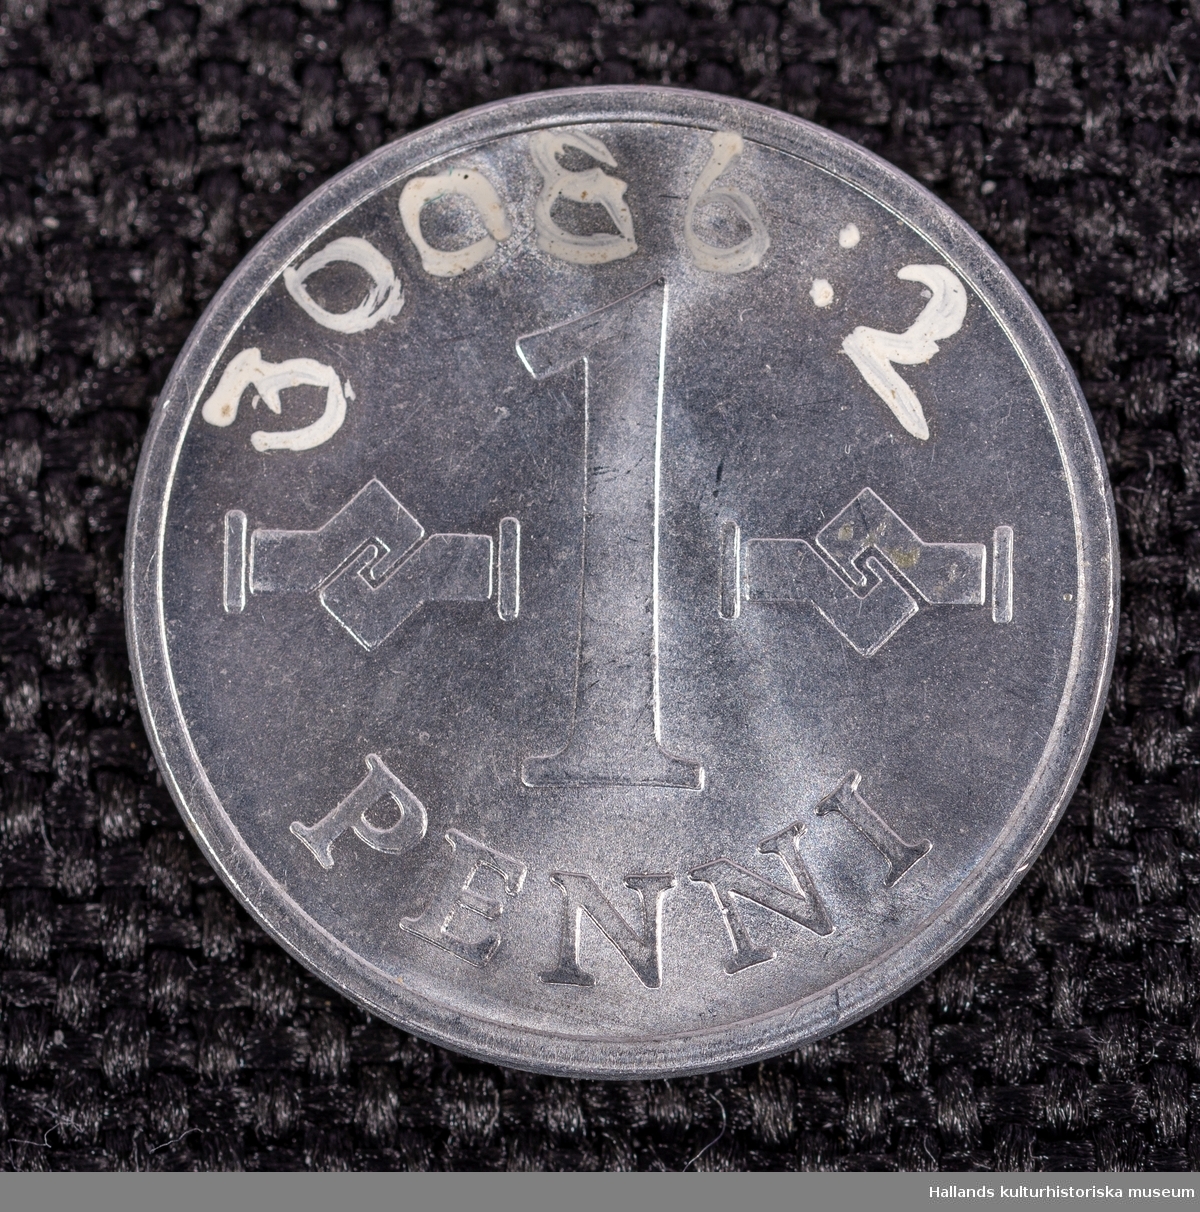 Två finska mynt av vitmetall (delar 1 och 2). Präglingsår 1969 respektive 1970. 1 penni.Diameter 10 mm. Åtsida: Präglingsår, dubbel swastika samt texten "SUOMEN TASAVALTA" (Republiken Finland). Frånsida: Valör. 